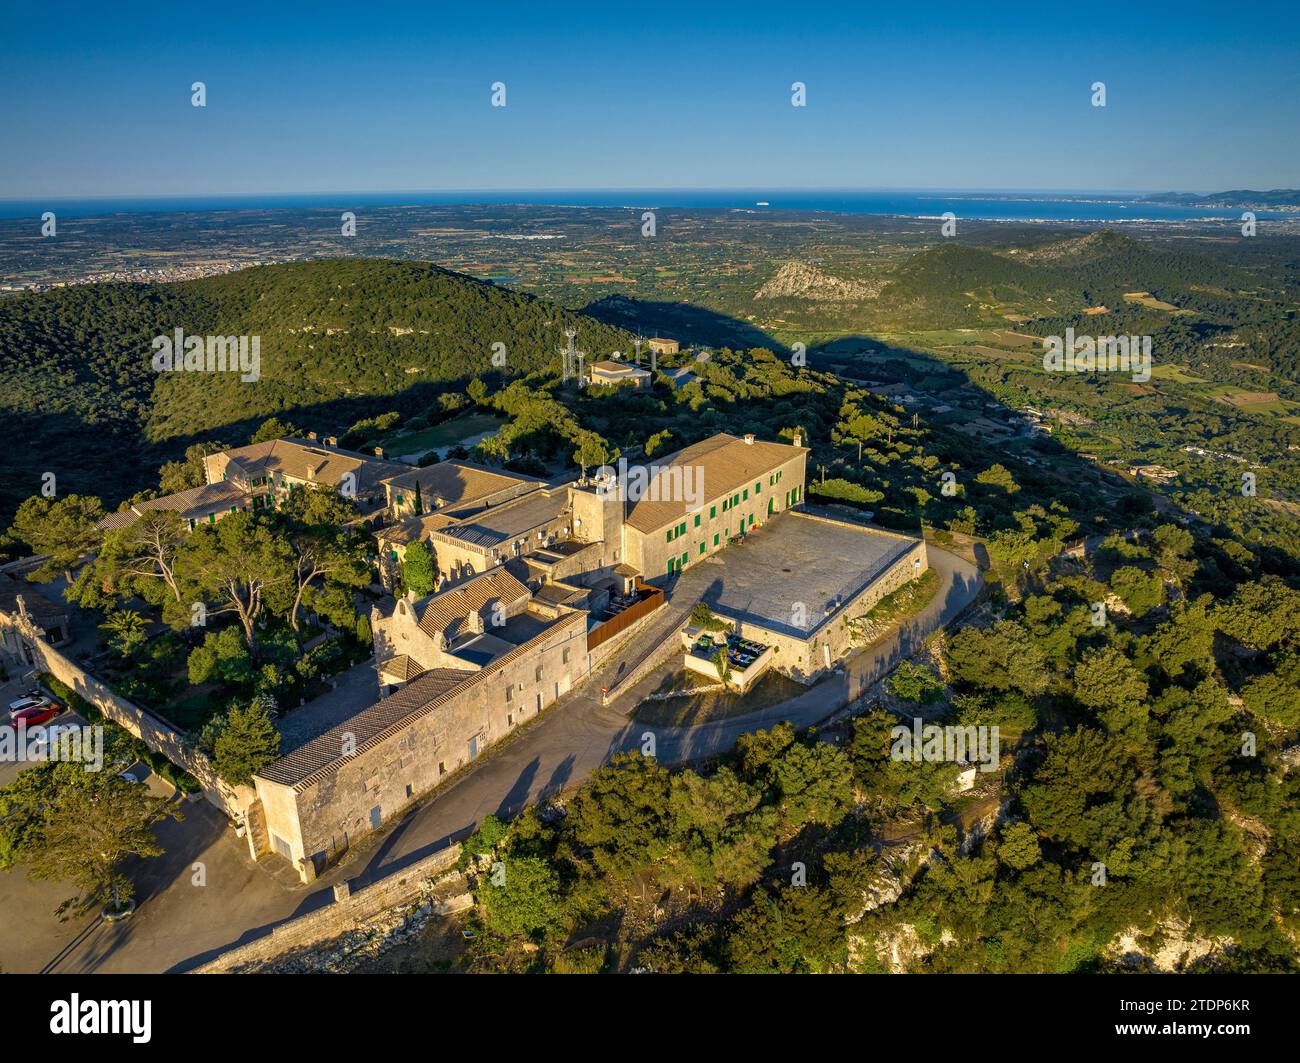 Vue aérienne au lever du soleil sur le sanctuaire de Cura, au sommet du Puig de Randa (Algaida, Majorque, Îles Baléares, Espagne) Banque D'Images